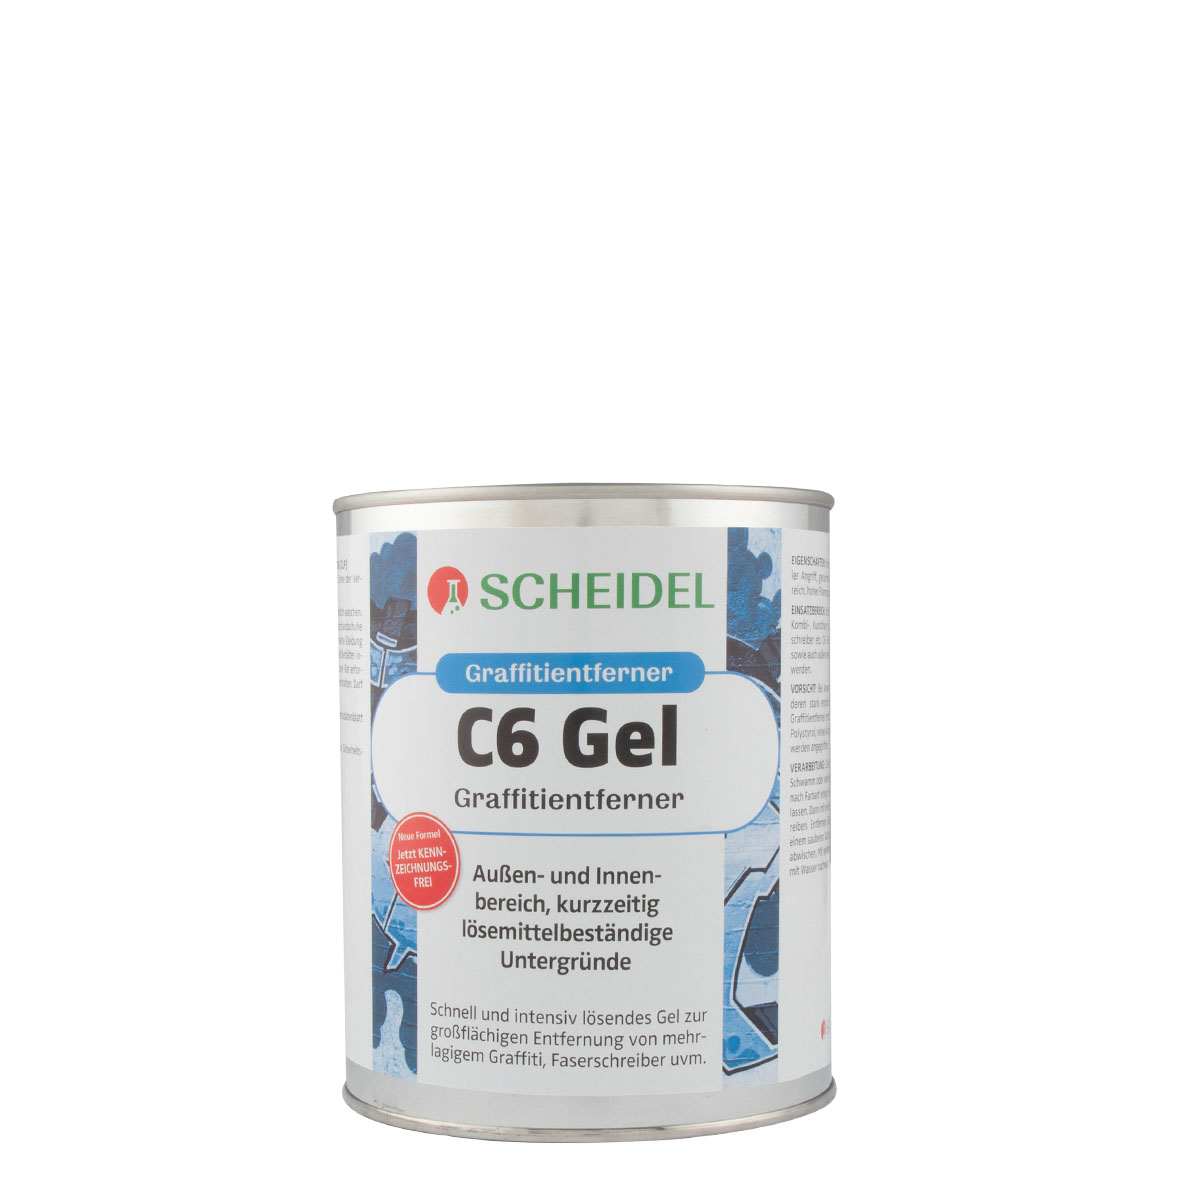 Scheidel C6 Gel Graffitientferner 1L